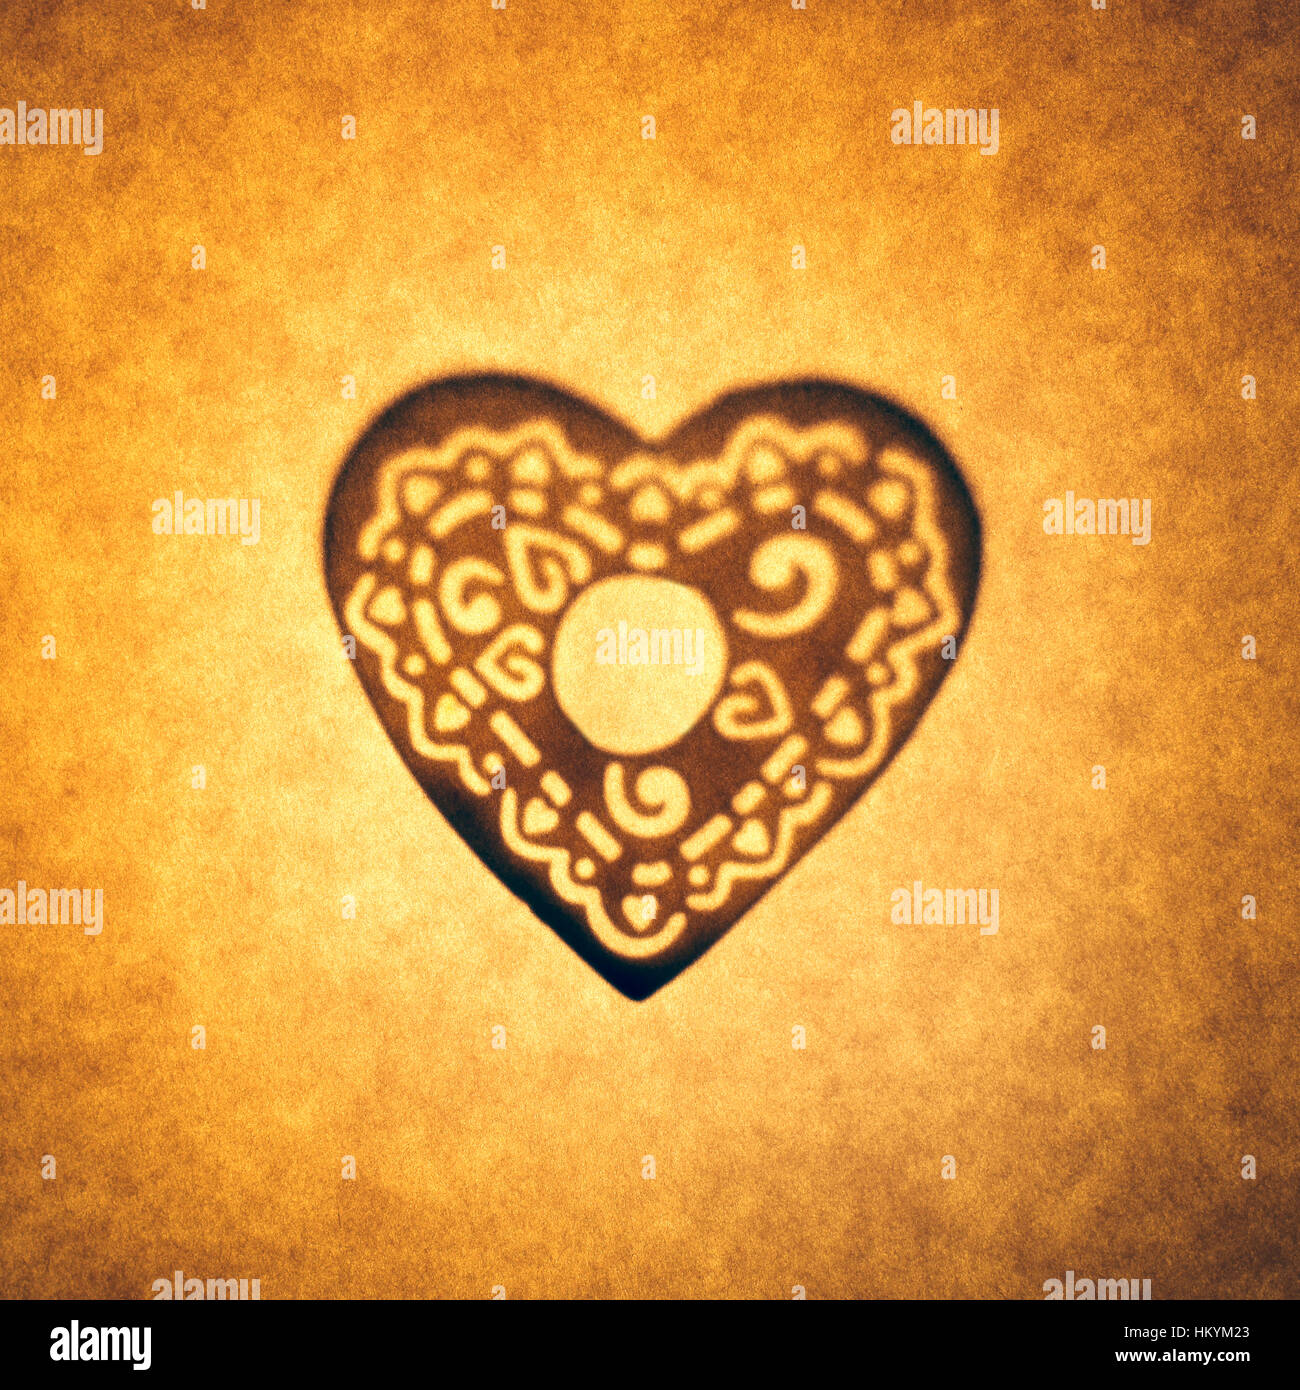 Silhouette en contre-jour de forme de coeur découper contre ton brun, papier avec spot mettez en surbrillance. Banque D'Images